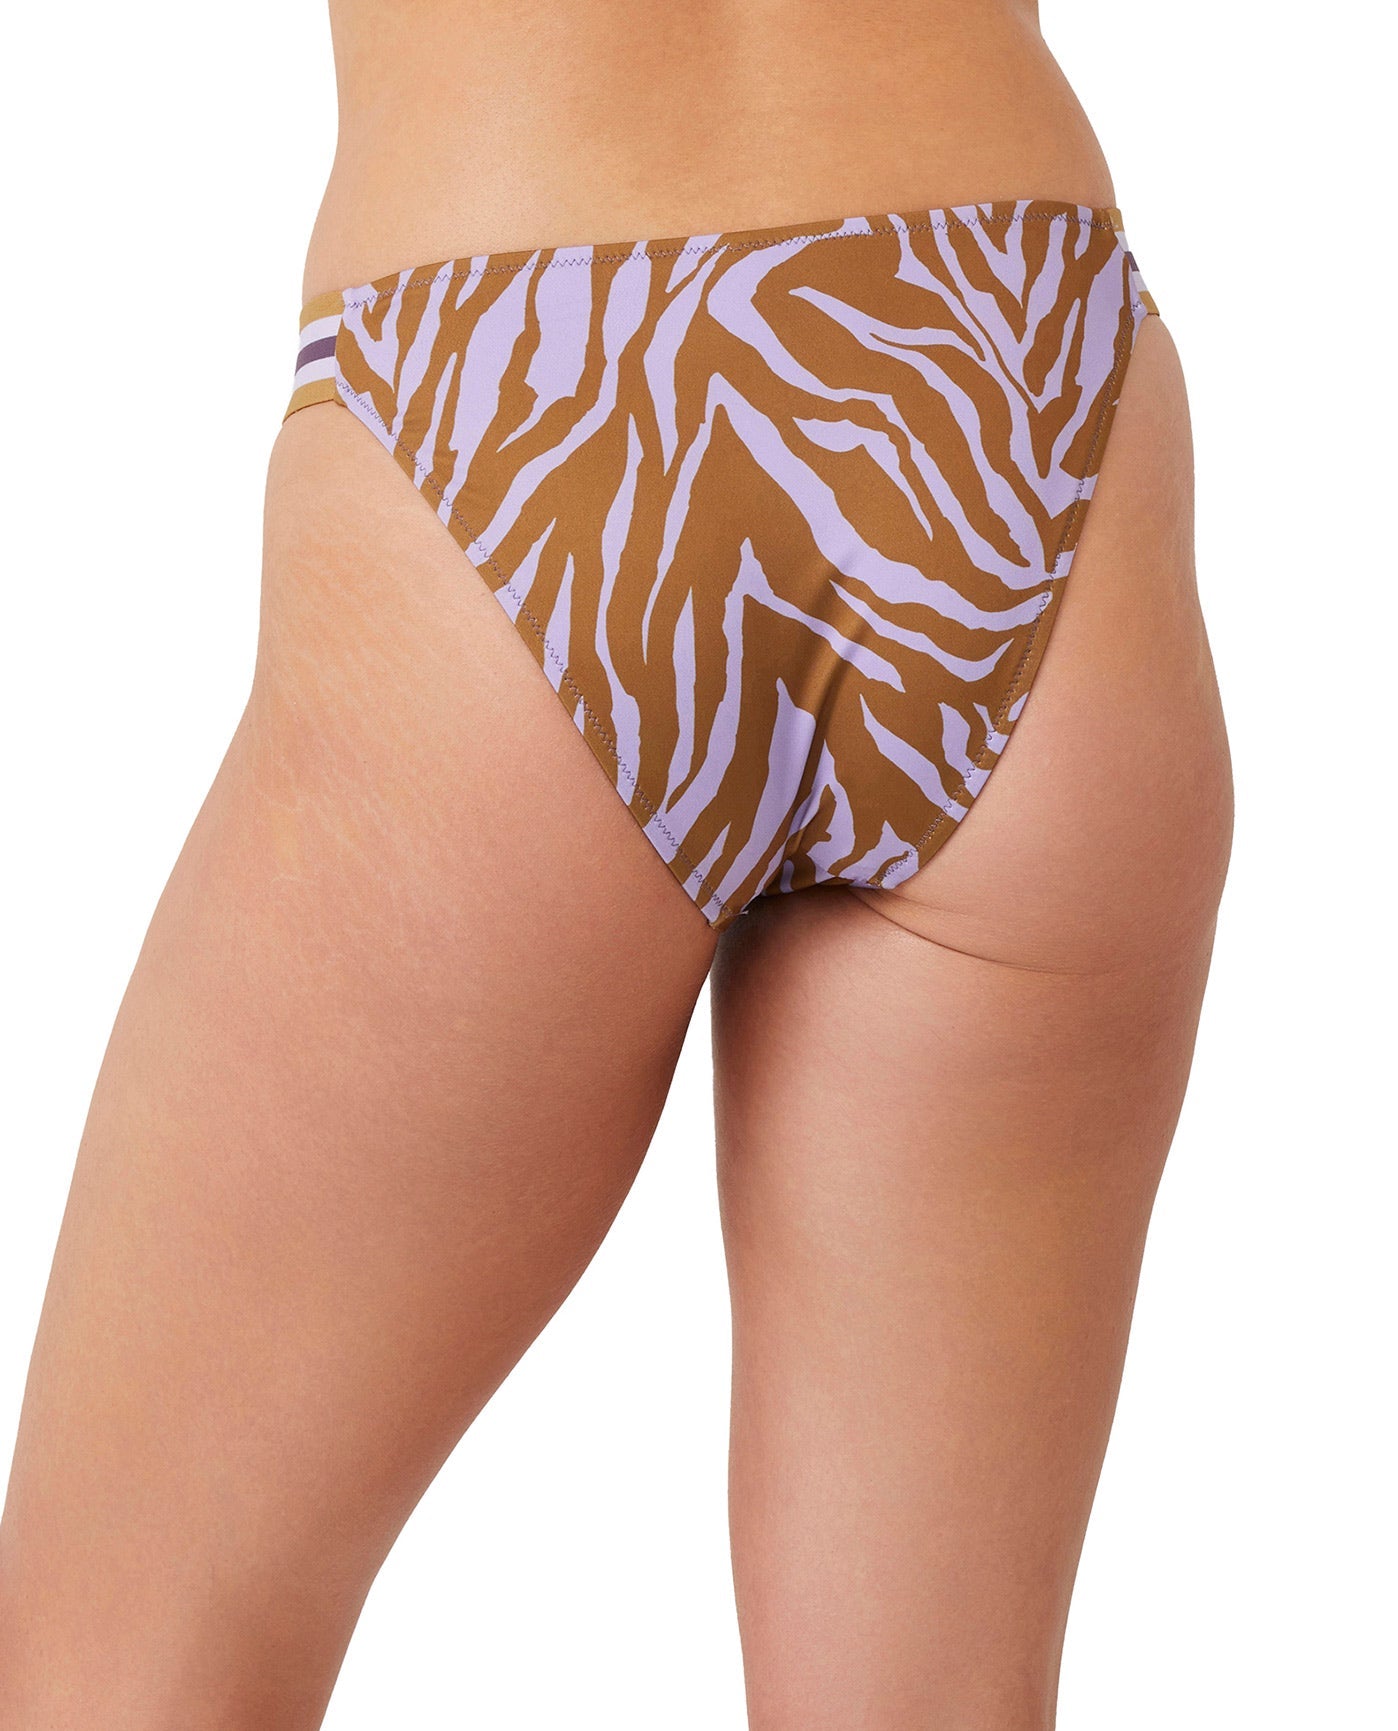 Back View Of Luma Wild Nostalgia High Leg Sexy Bikini Bottom | LUMA WILD NOSTALGIA LILAC AND MUSTARD